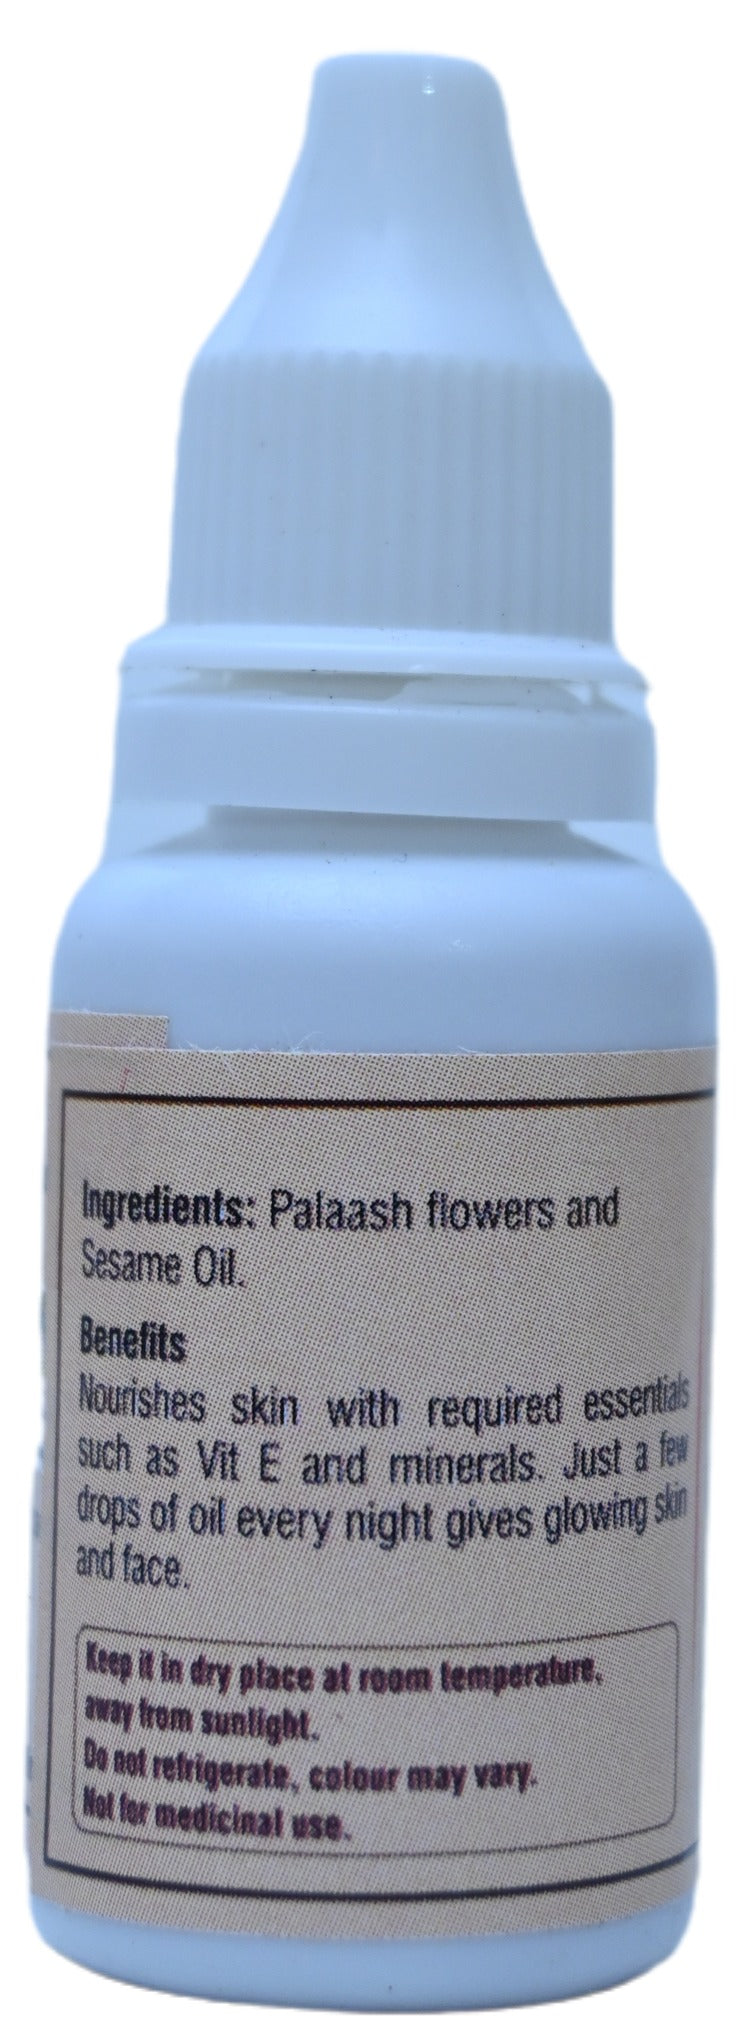 Palaash Flowers infused Sesame Oil - Skin Care